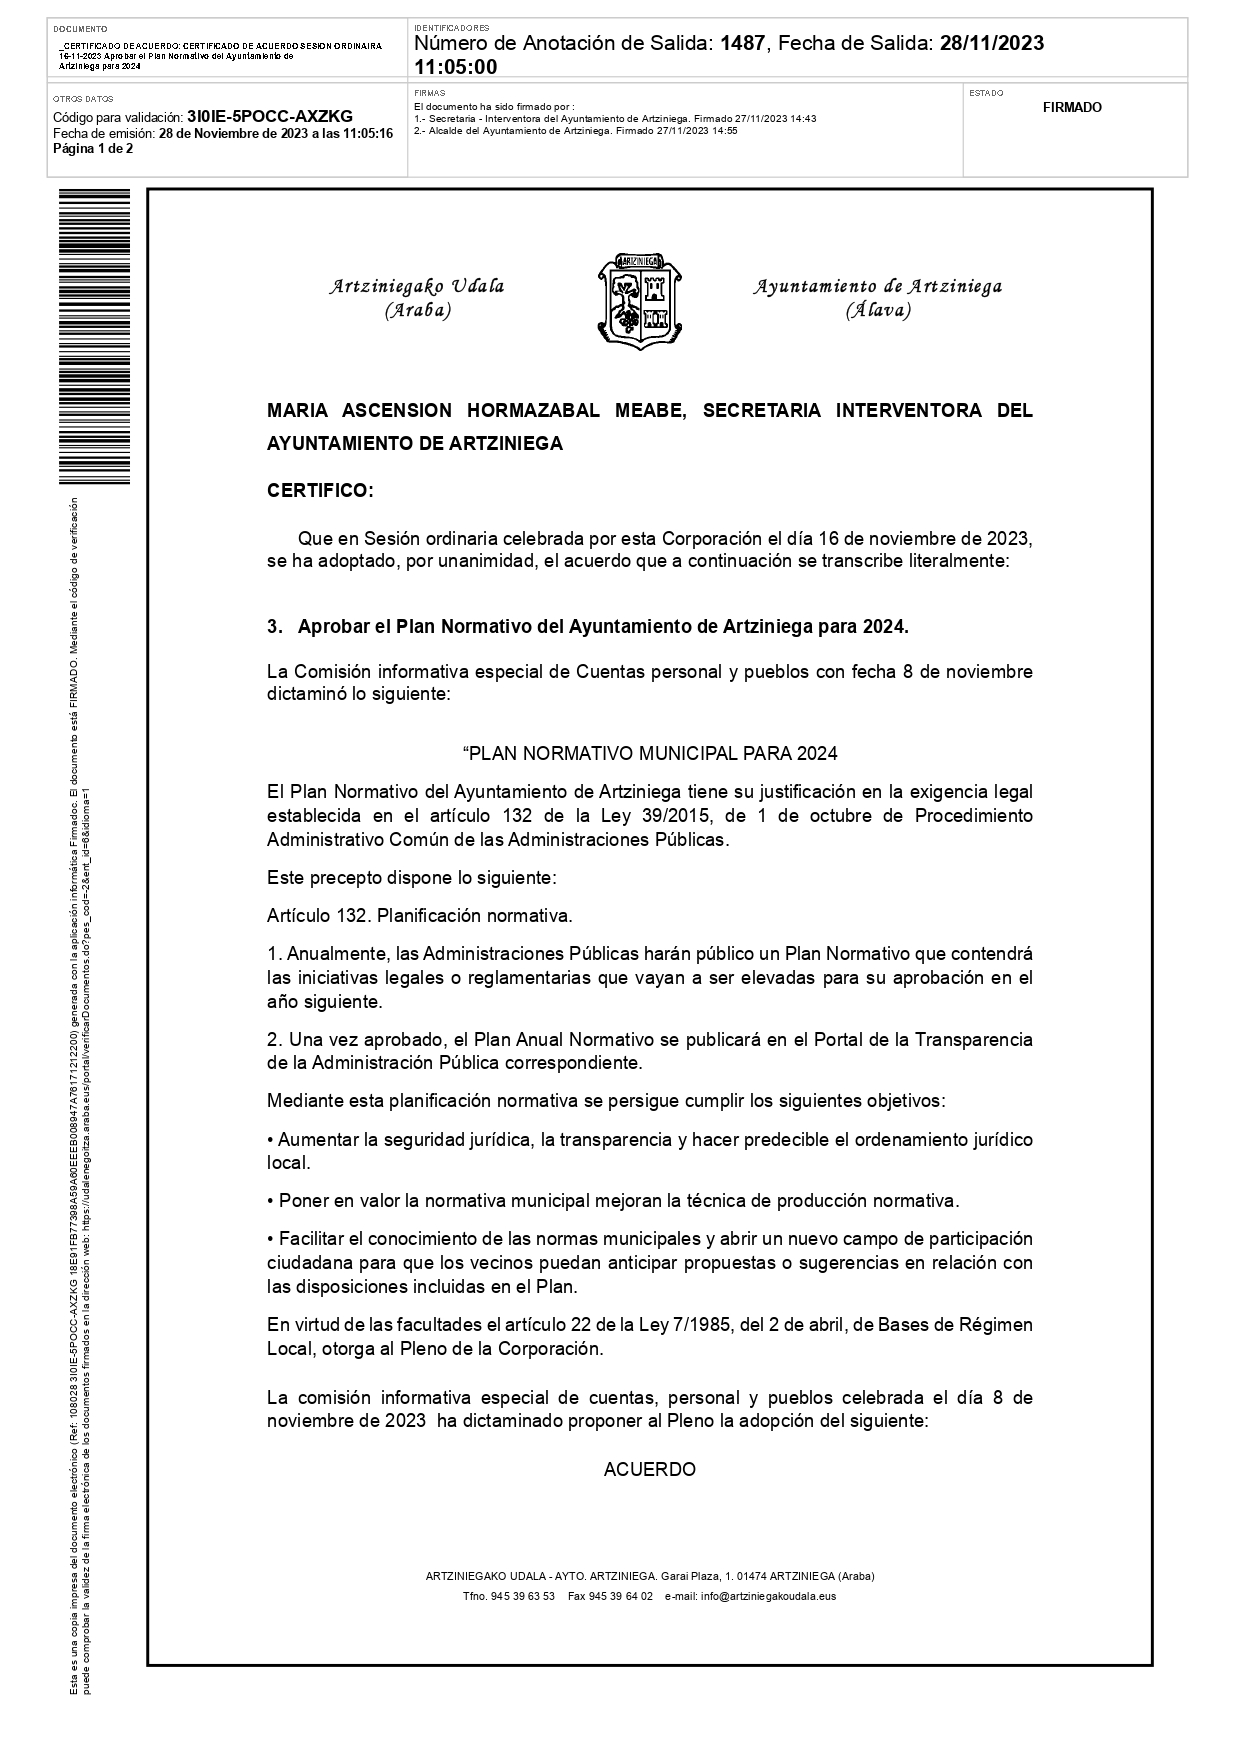 CERTIFICADO DE ACUERDO SESION ORDINAIRA 16 11 2023 Aprobar el Plan Normativo del Ayuntamiento de Artziniega para 2024 page 0001